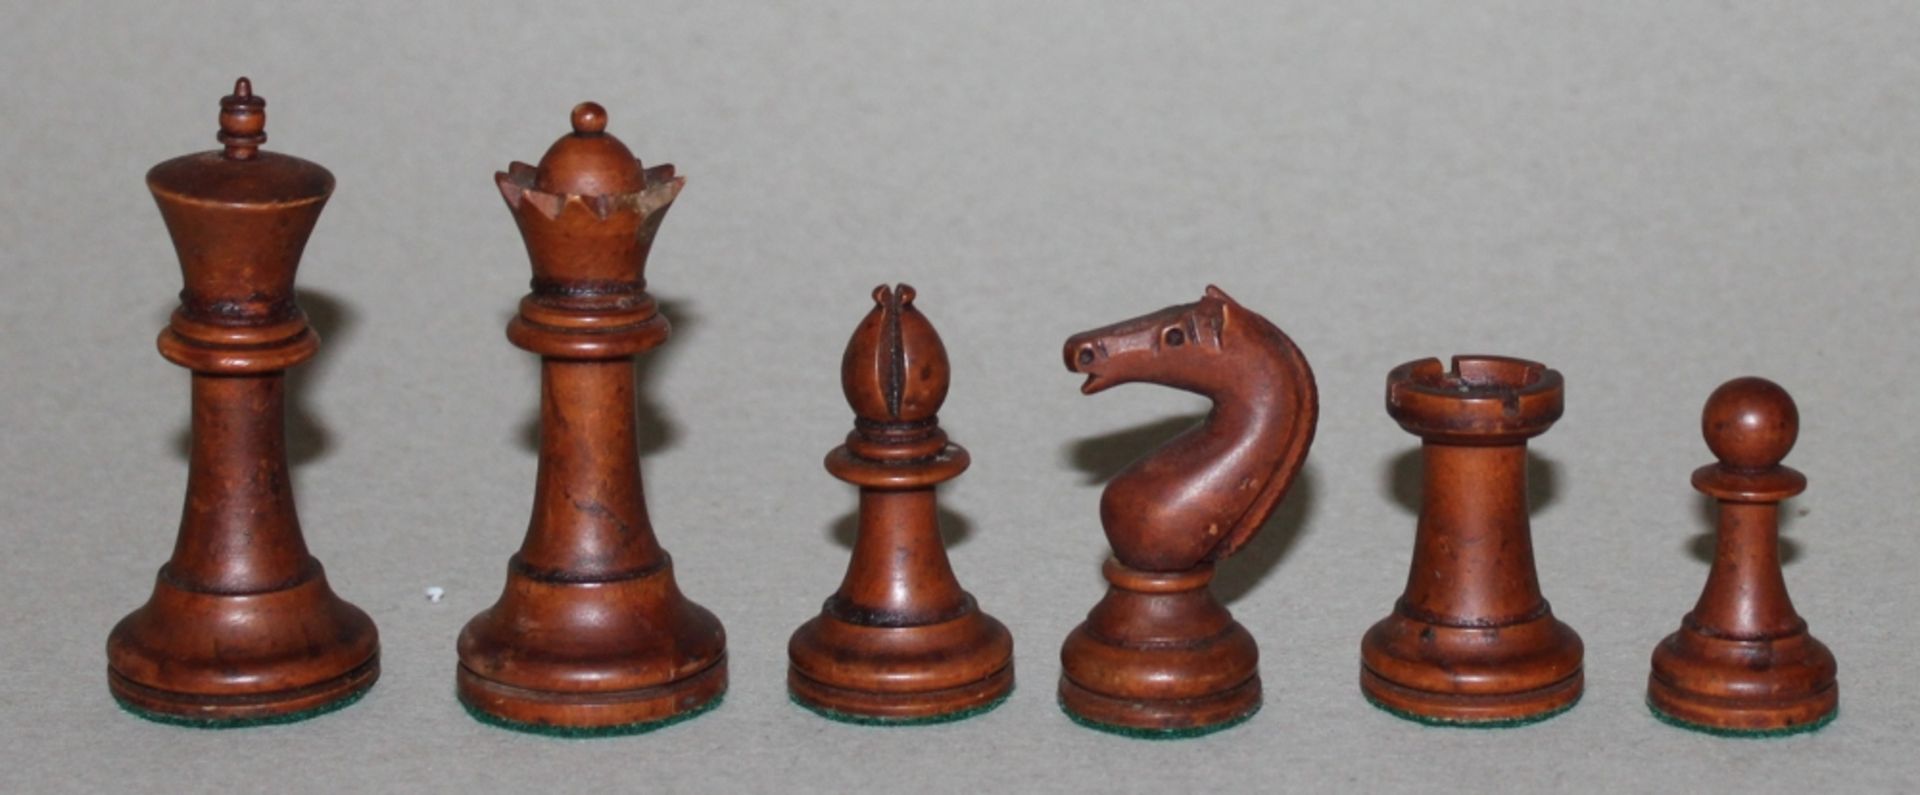 Europa. Irland. Schachfiguren aus Erdbeerbaumholz (?) aus Cork in Irland(?) in einer Mahagoni - - Image 2 of 3